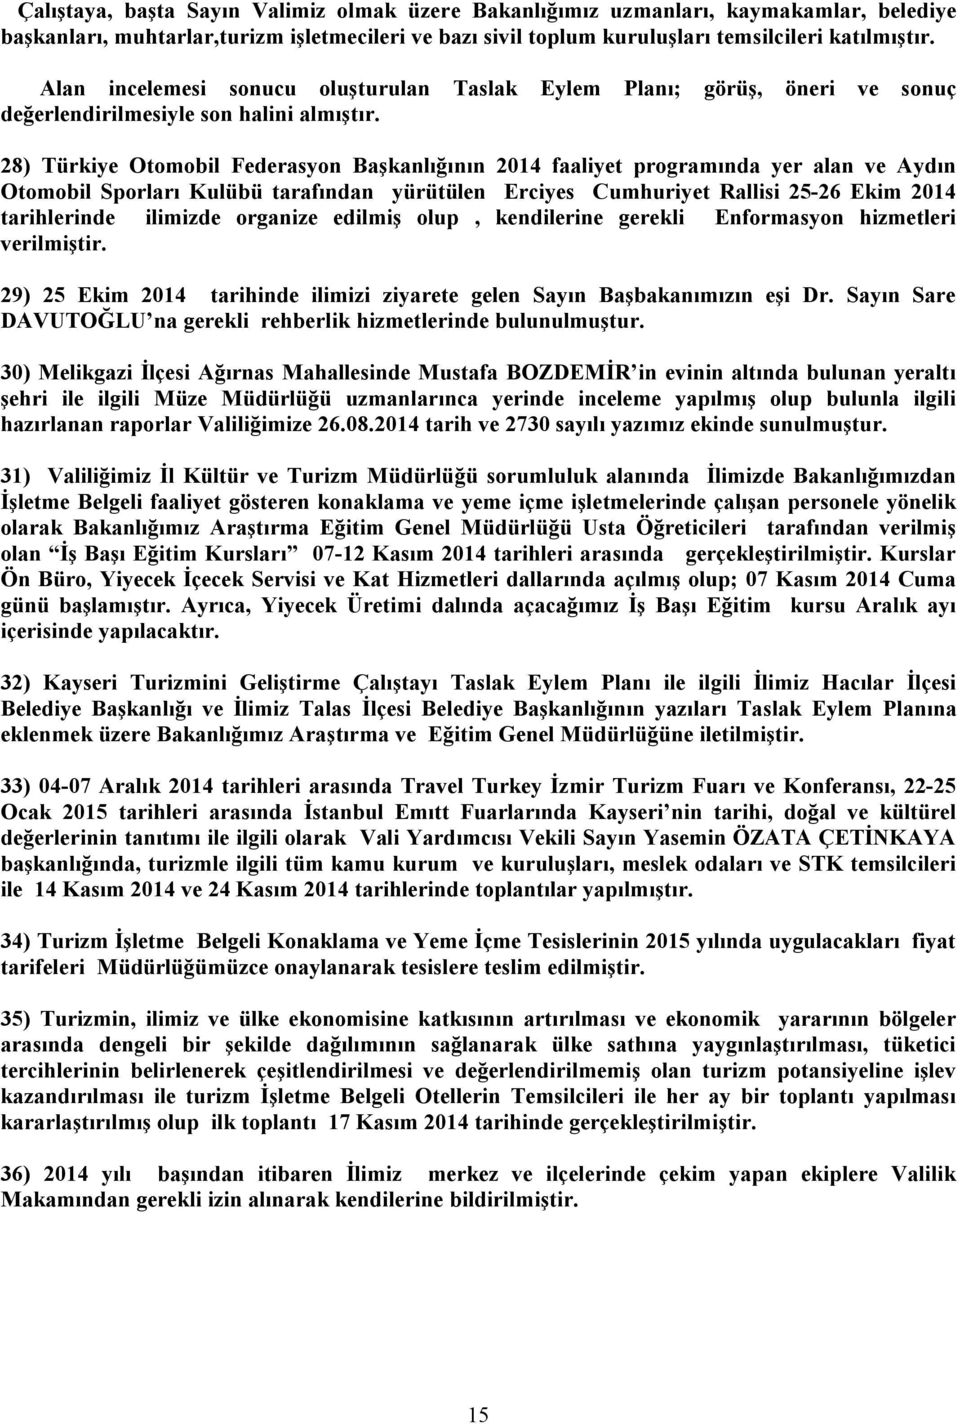 28) Türkiye Otomobil Federasyon Başkanlığının 2014 faaliyet programında yer alan ve Aydın Otomobil Sporları Kulübü tarafından yürütülen Erciyes Cumhuriyet Rallisi 25-26 Ekim 2014 tarihlerinde